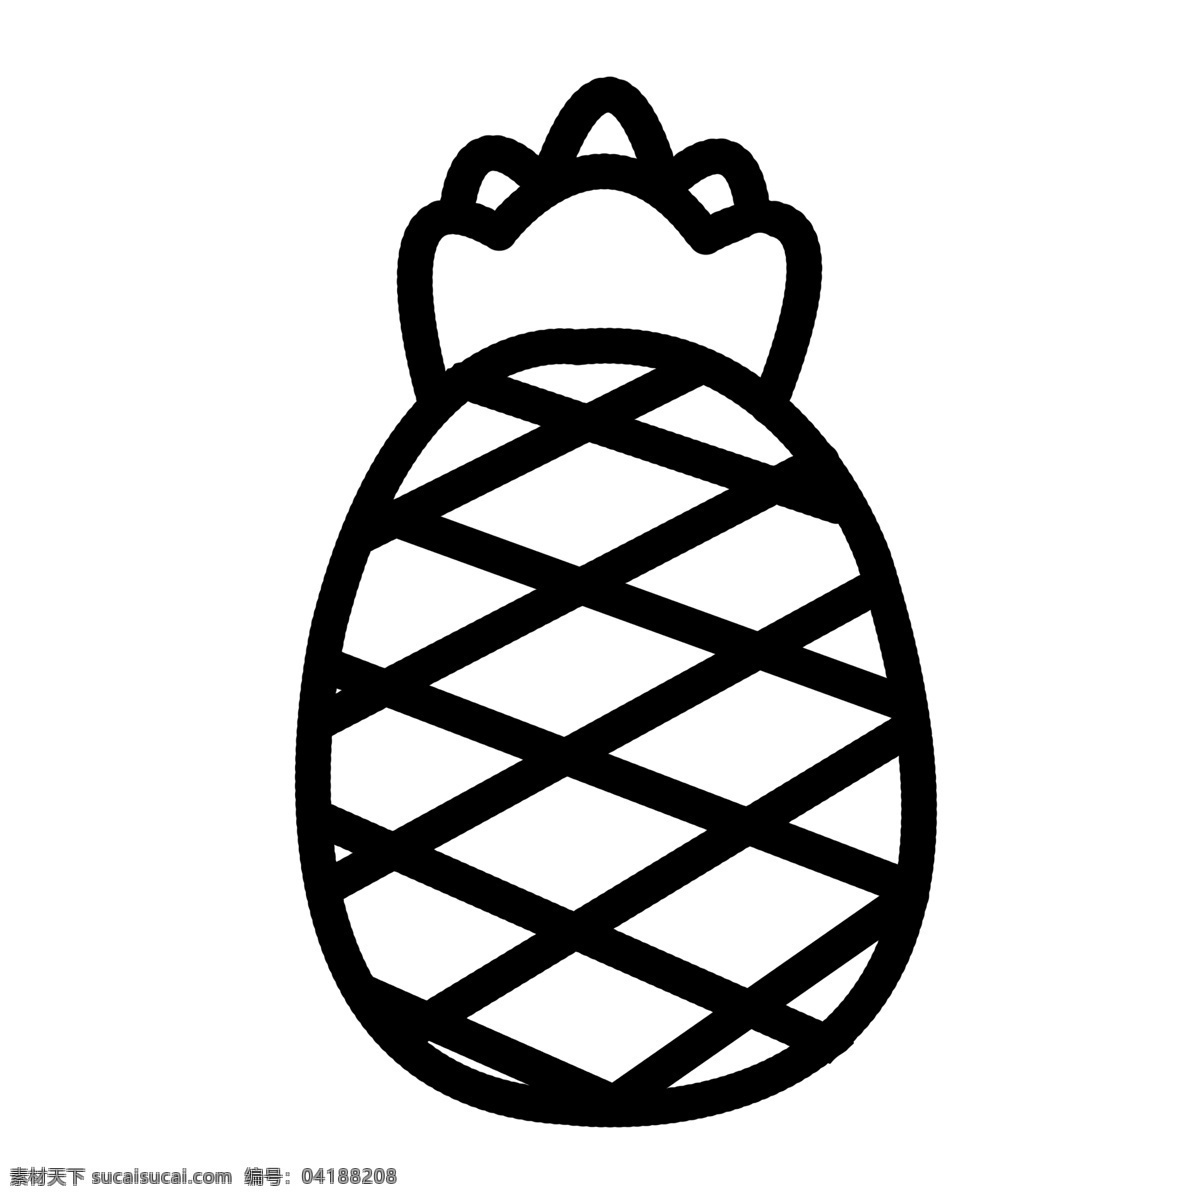 水果 图标 元素 菠萝 ppt图标 简约风格 水果图标 海报图标 菠萝水果 免 扣 图案